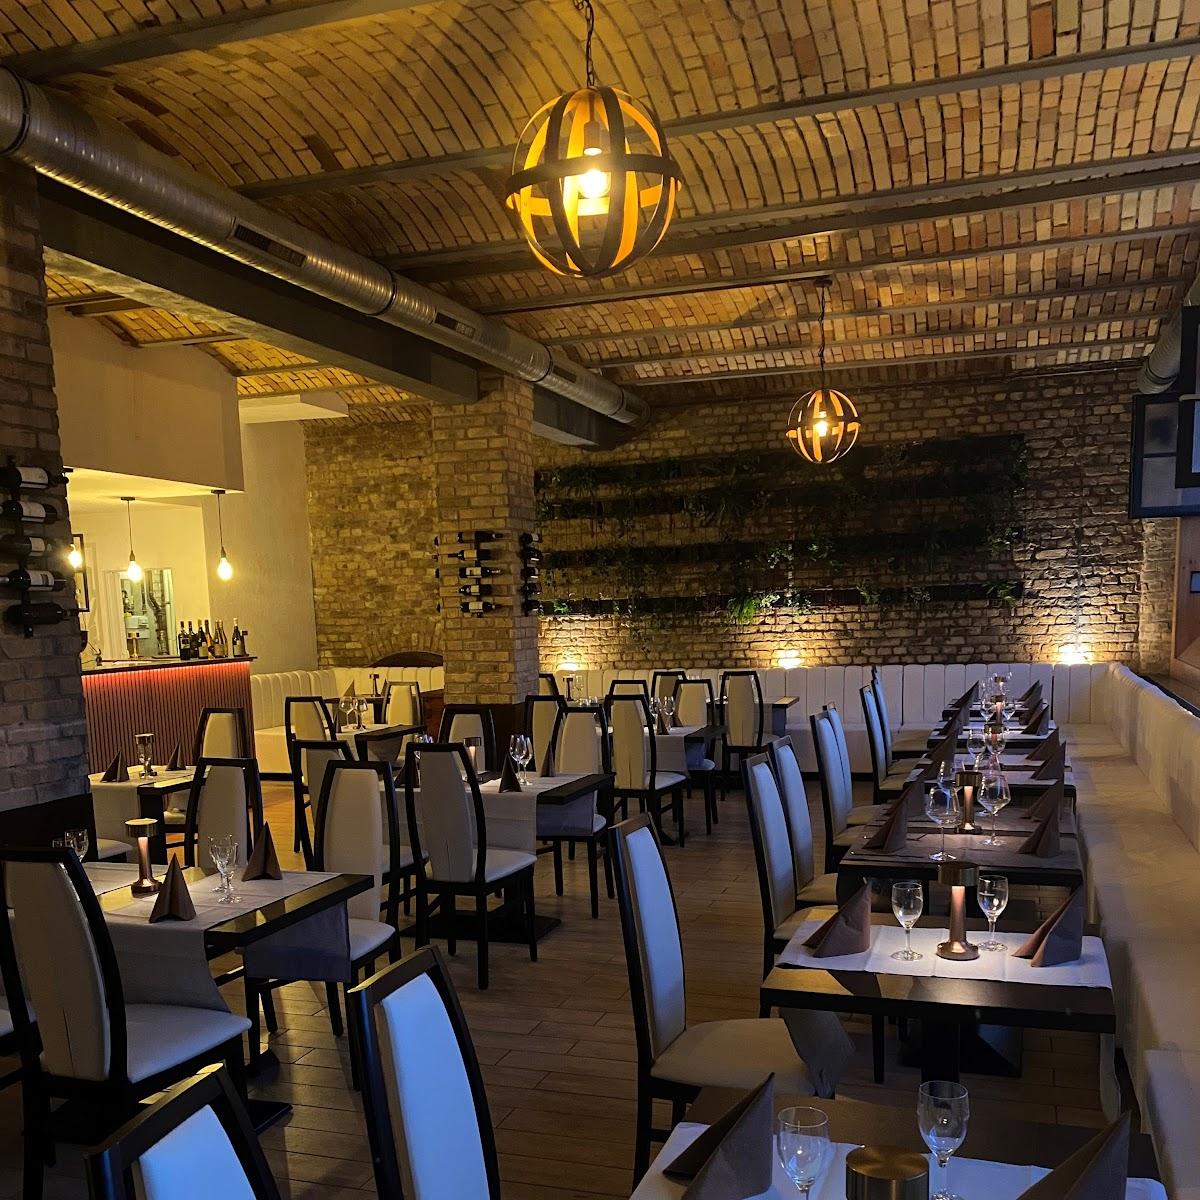 Restaurant "DiVino Trattoria" in Griesheim